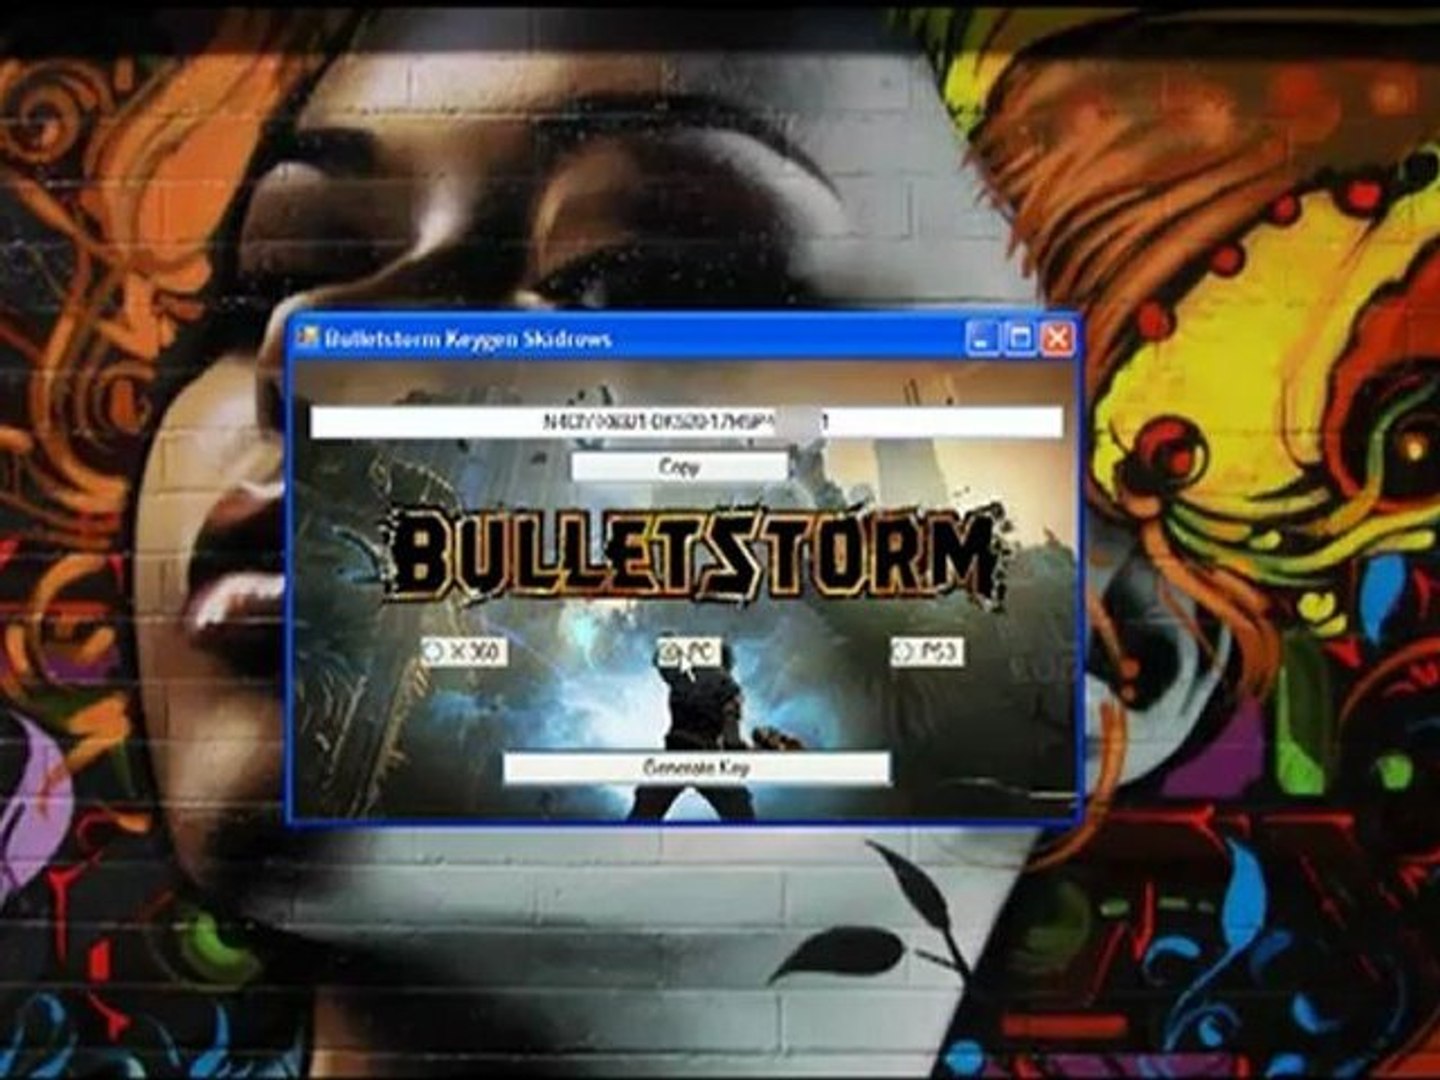 Bulletstorm Keygen (Key Generator) - How to Generate ... - video Dailymotion